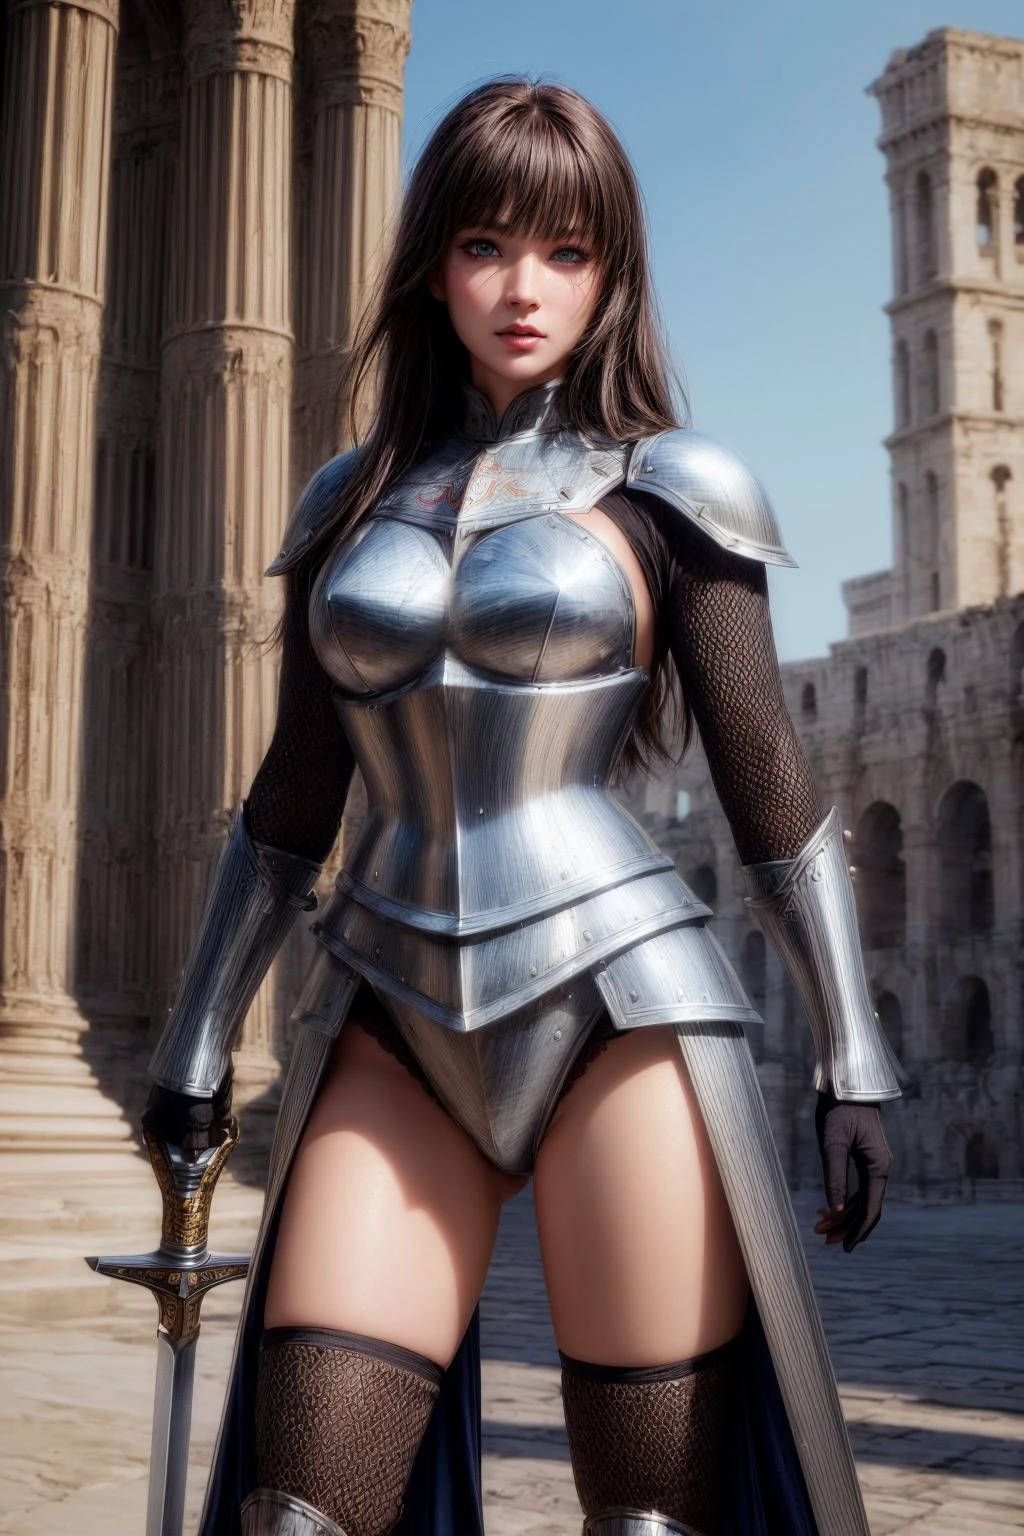 guerreiro,(guerreiro uniform,armadura de aço,escudo de aço,concha de aço,espada grande:1.3),em Colosseum,tiro de corpo inteiro, 
((melhor qualidade)), ((altamente detalhado)),photorealista, realista, Obra de arte, absurdos, textura detalhada da pele, (olhos detalhados, olhos profundos,detalhe do cabelo:1.0),alunos notáveis e detalhados,
1 mulher,(rosto redondo:1.1), (lábios+inventar:1.1), delineador+eye inventar,seios médios, cintura estreita,